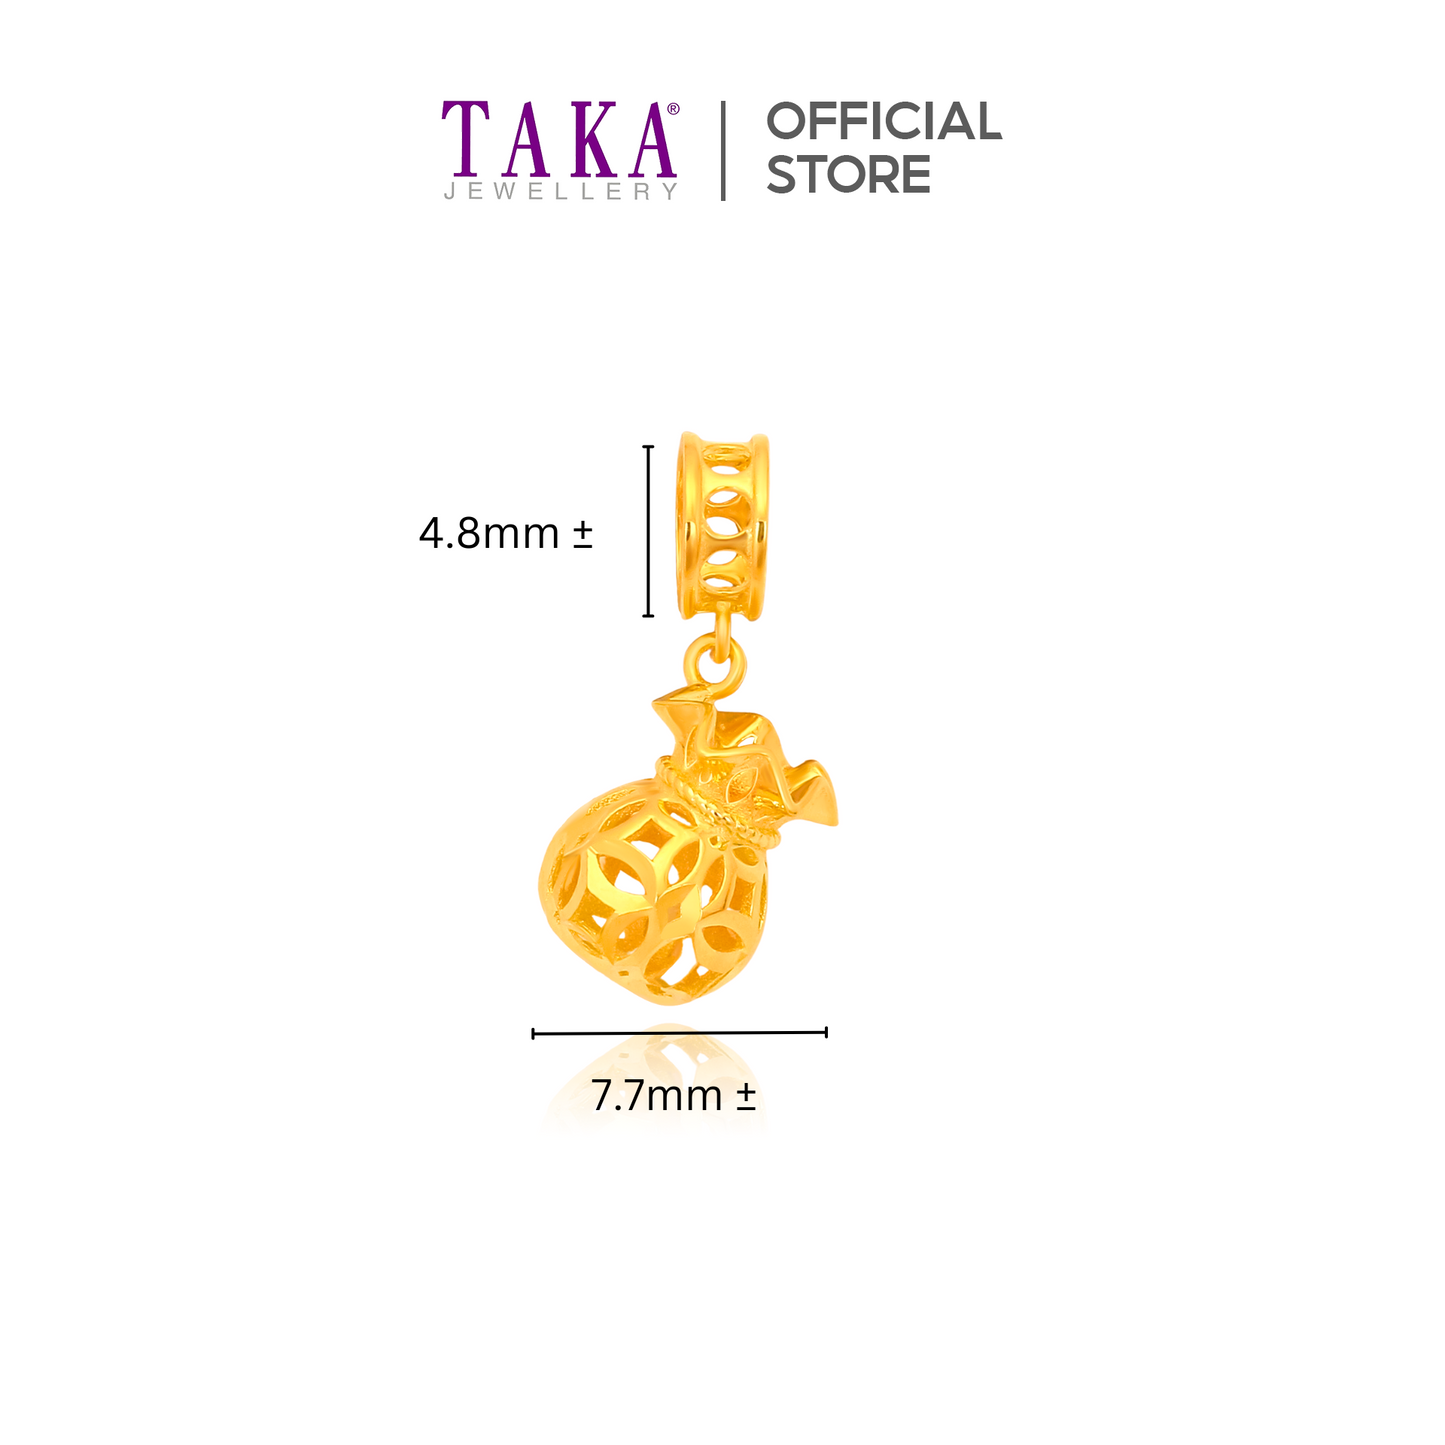 TAKA Jewellery 916 Gold Charm Fortune Bag